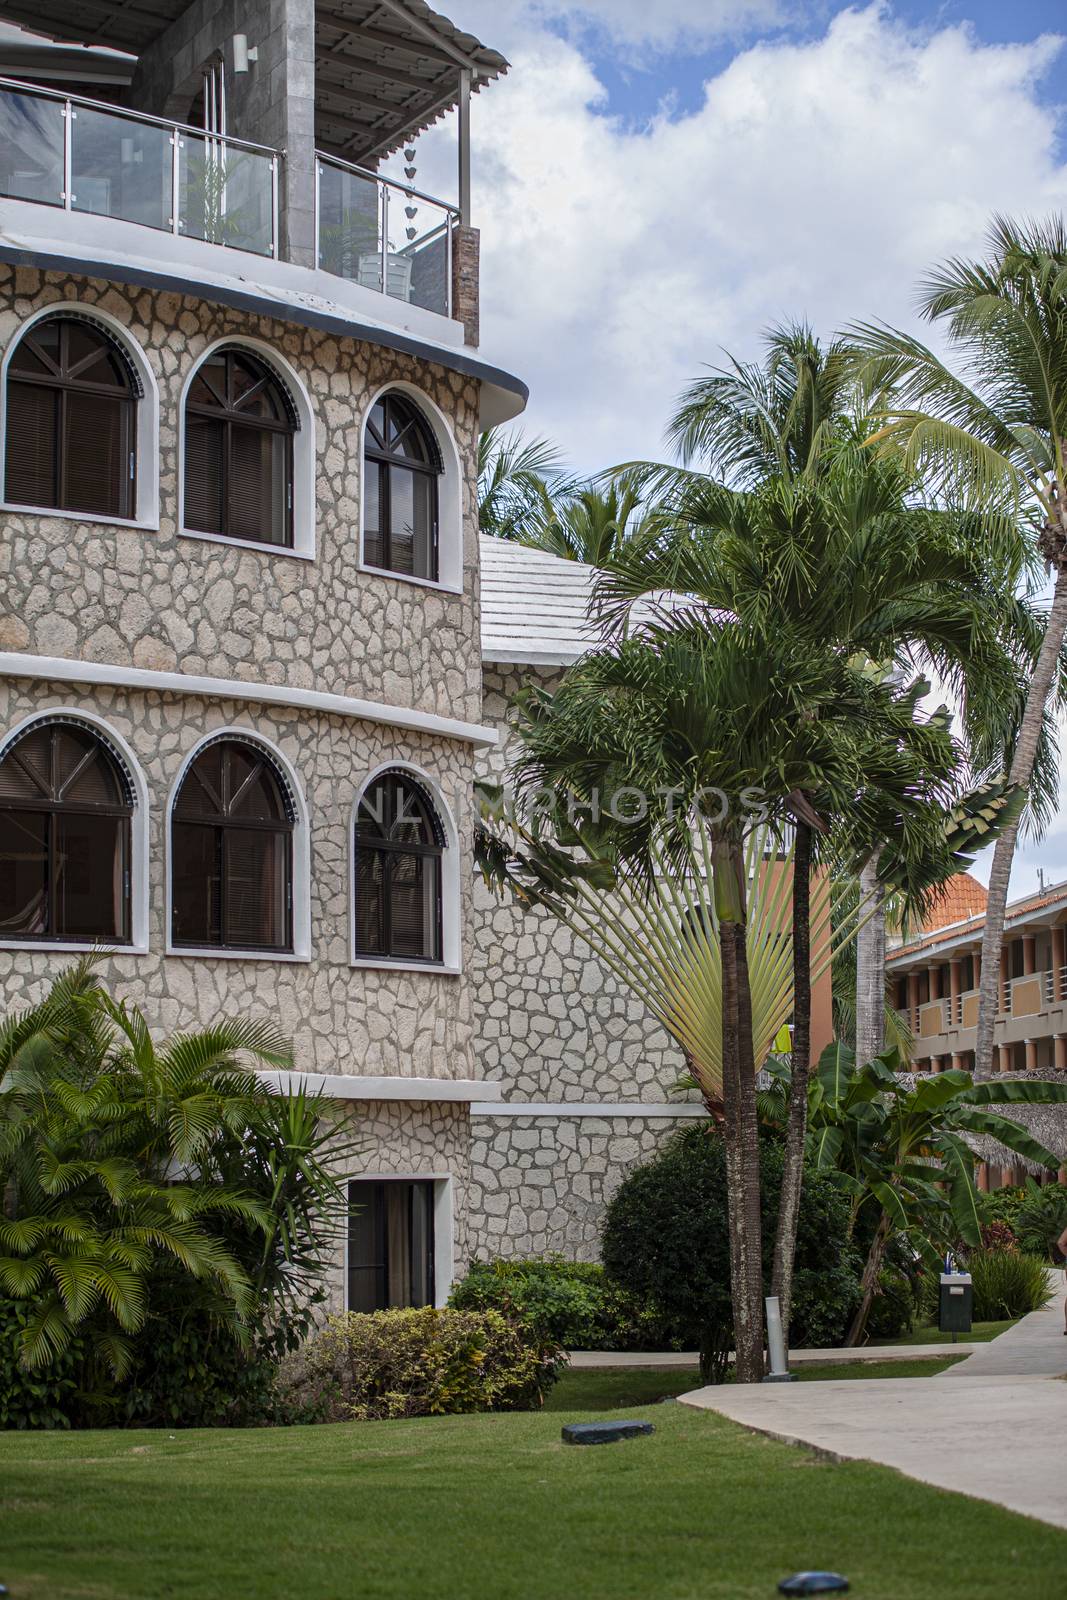 BAYAHIBE, DOMINICAN REPUBLIC 13 DECEMBER 2019: Dominican resort building